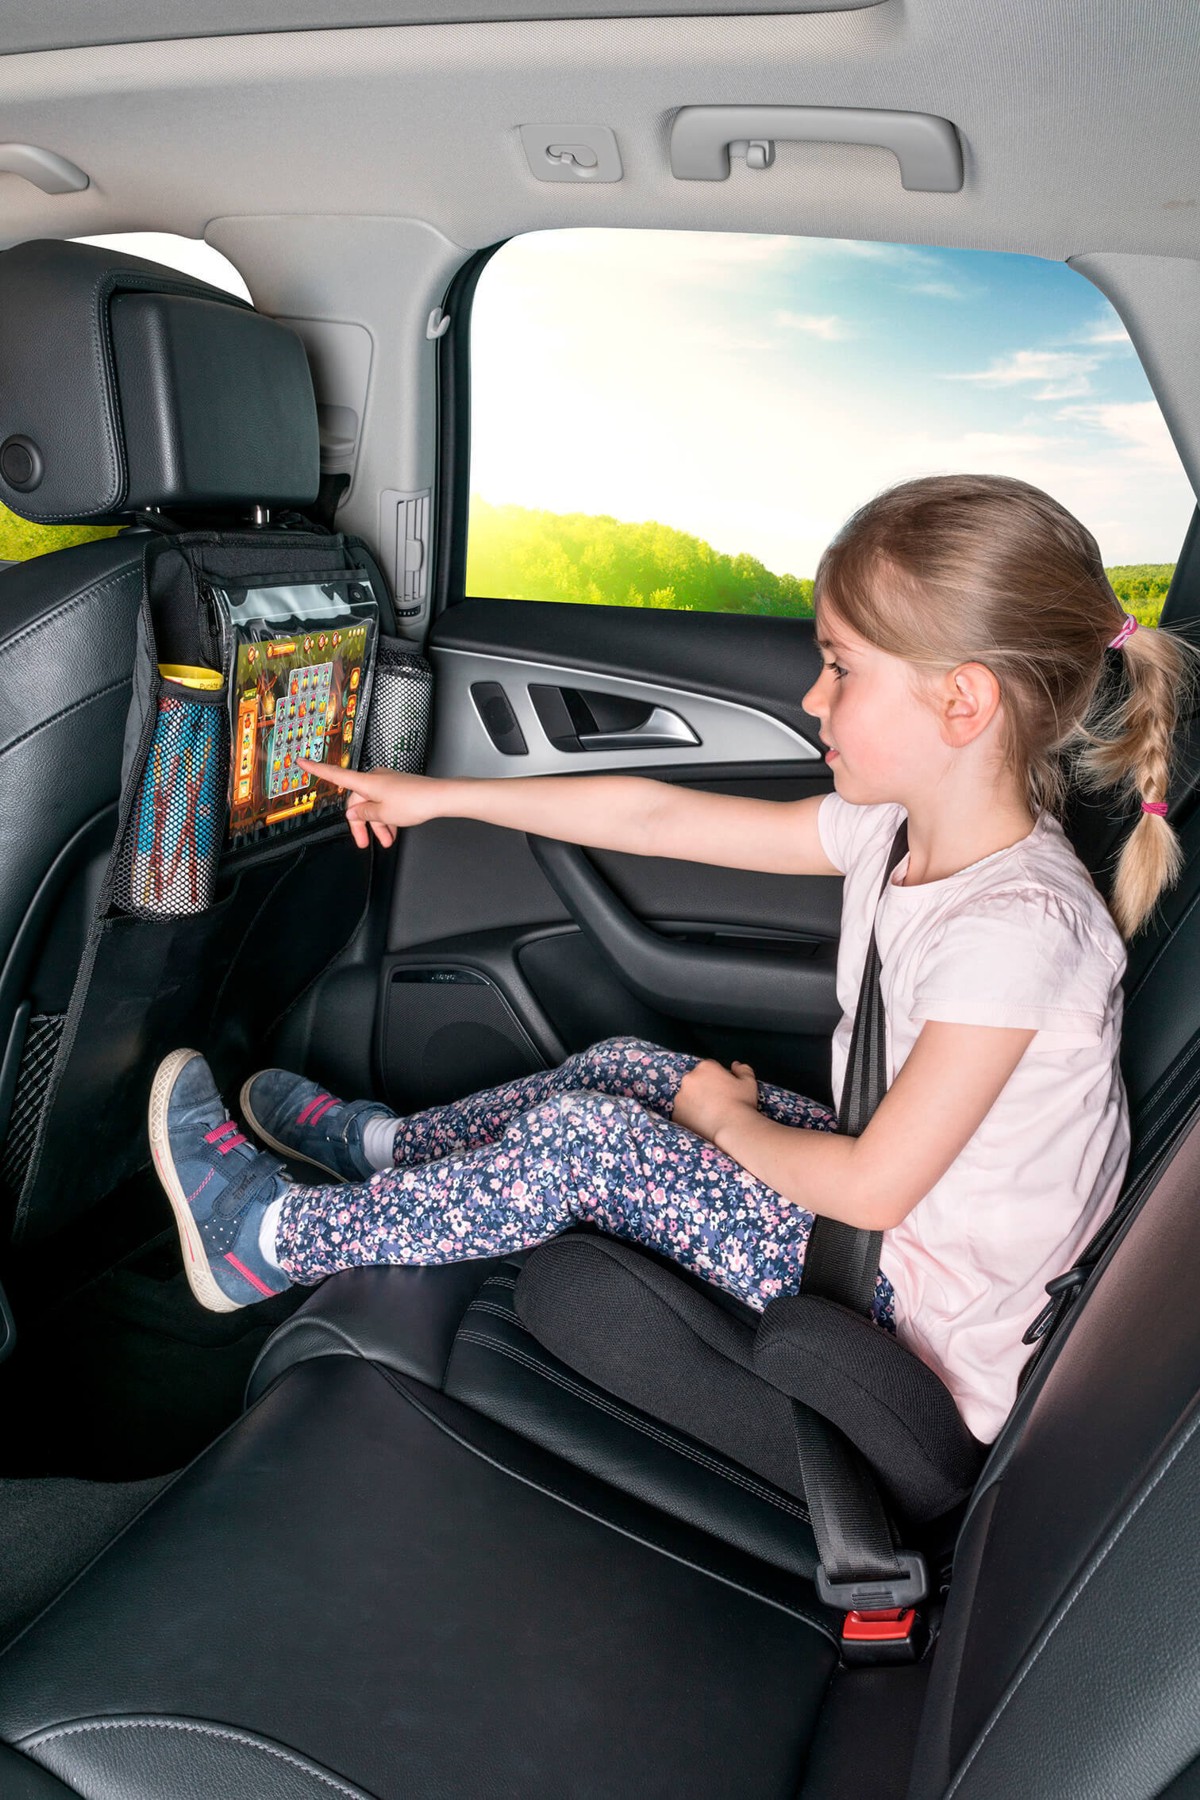 Kombination Universal Auto Tablet PC Halter + Kinder Rücksitz Organizer  schwarz, 64x40 cm, Montage an der Rückenlehne